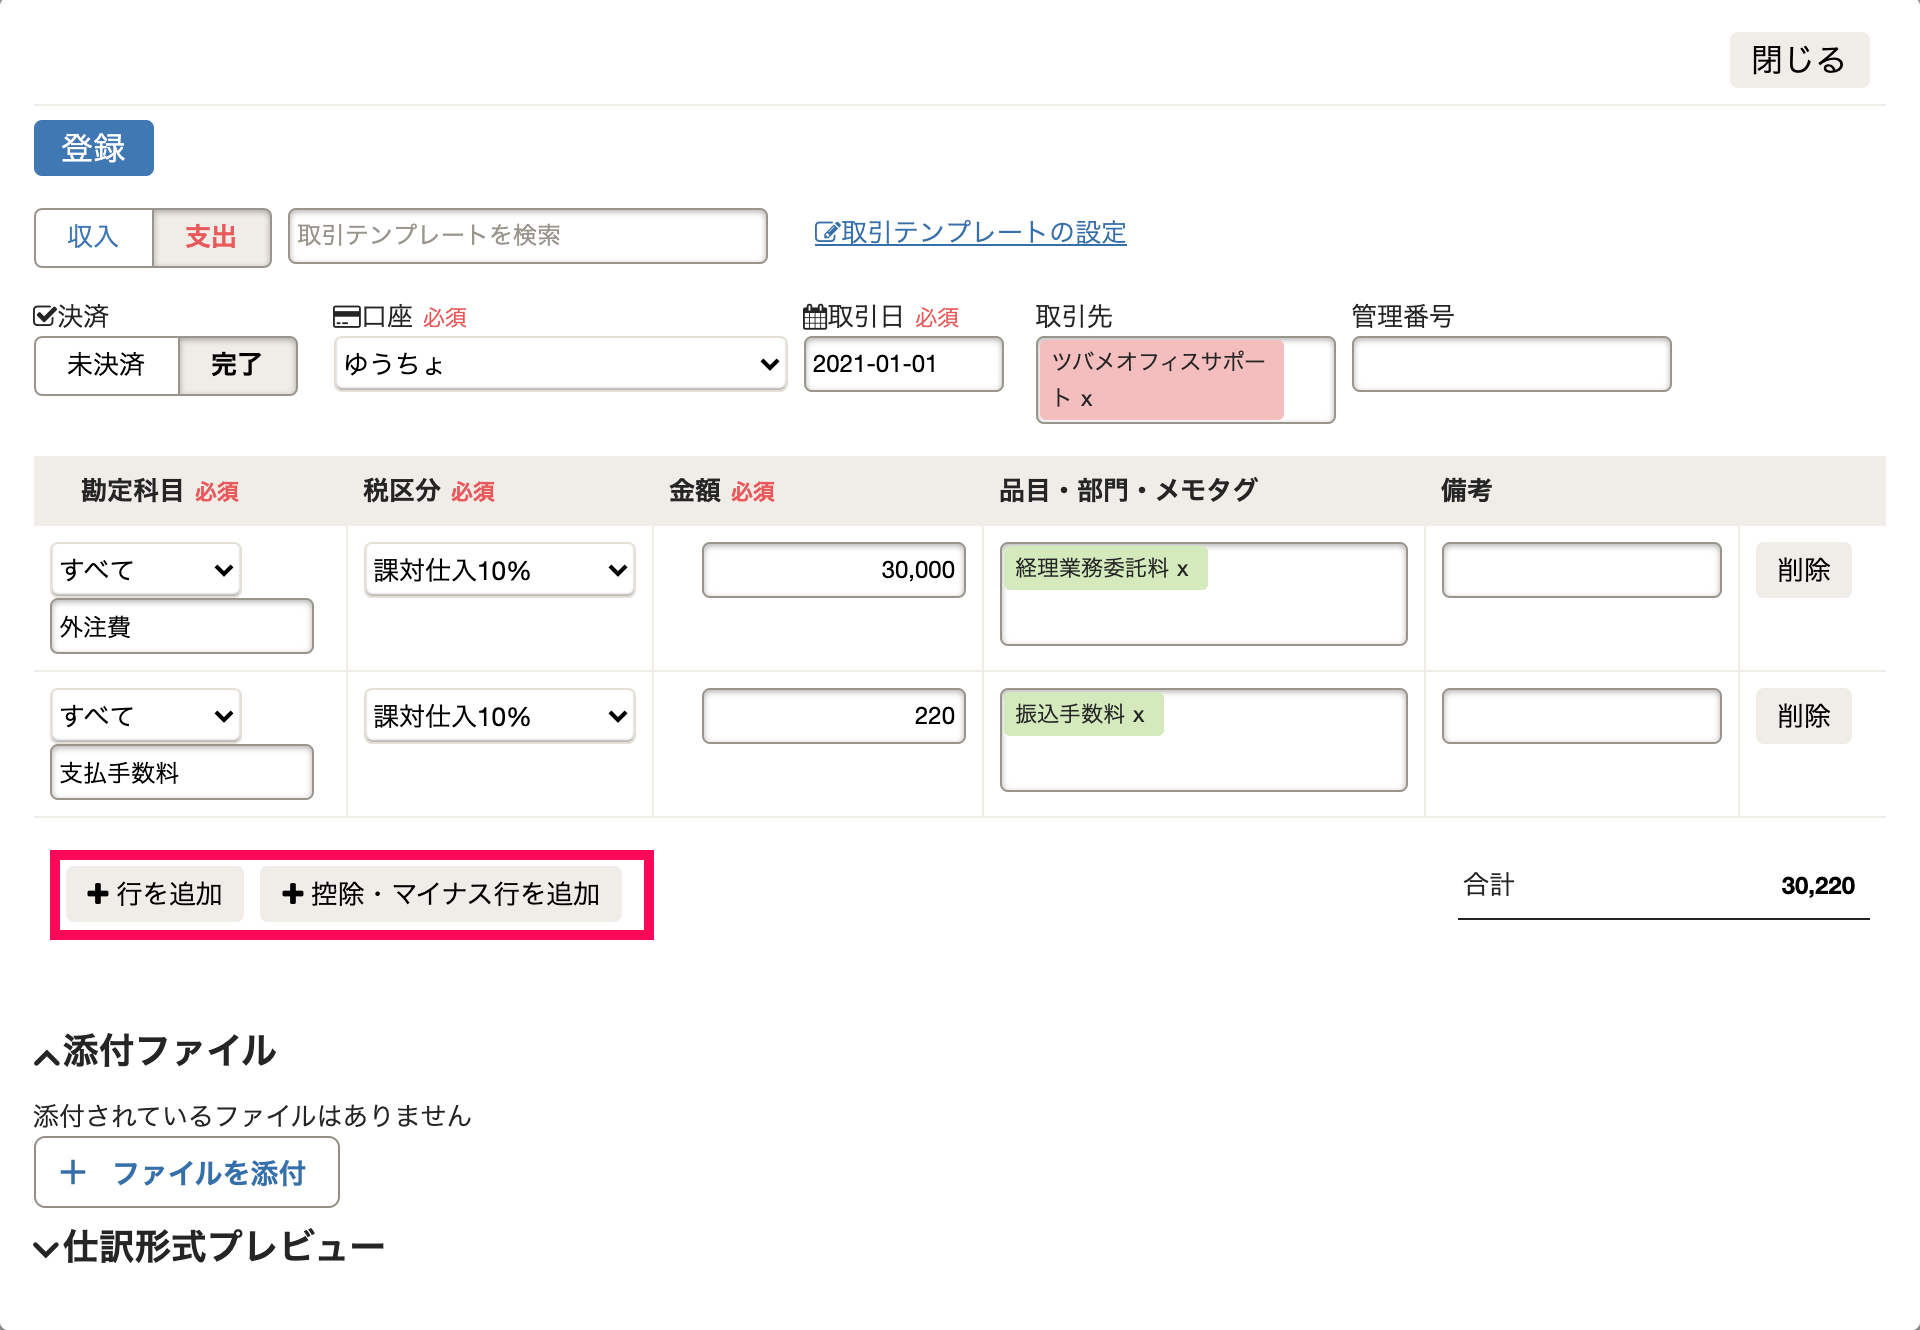 「取引の一覧・登録」の「詳細登録」画面にて、行の追加ボタンを指し示しているスクリーンショット